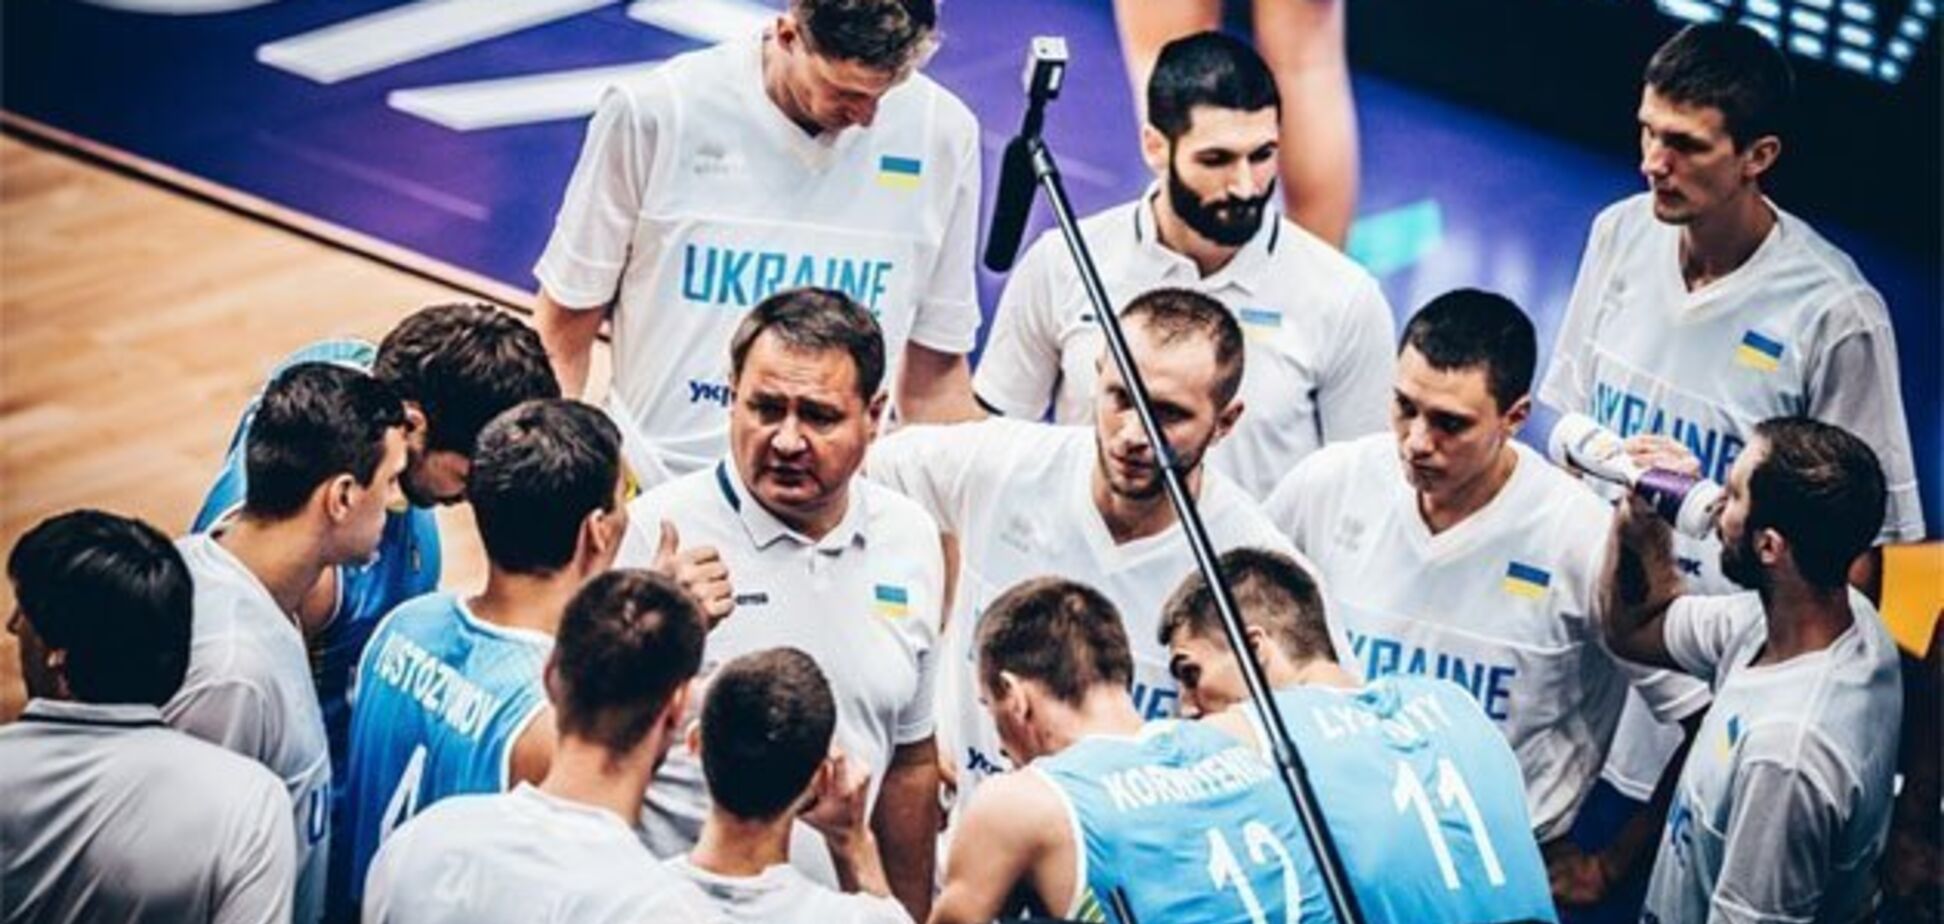 Сборная Украины по баскетболу в составе мечты проведет открытую тренировку перед битвой с Испанией